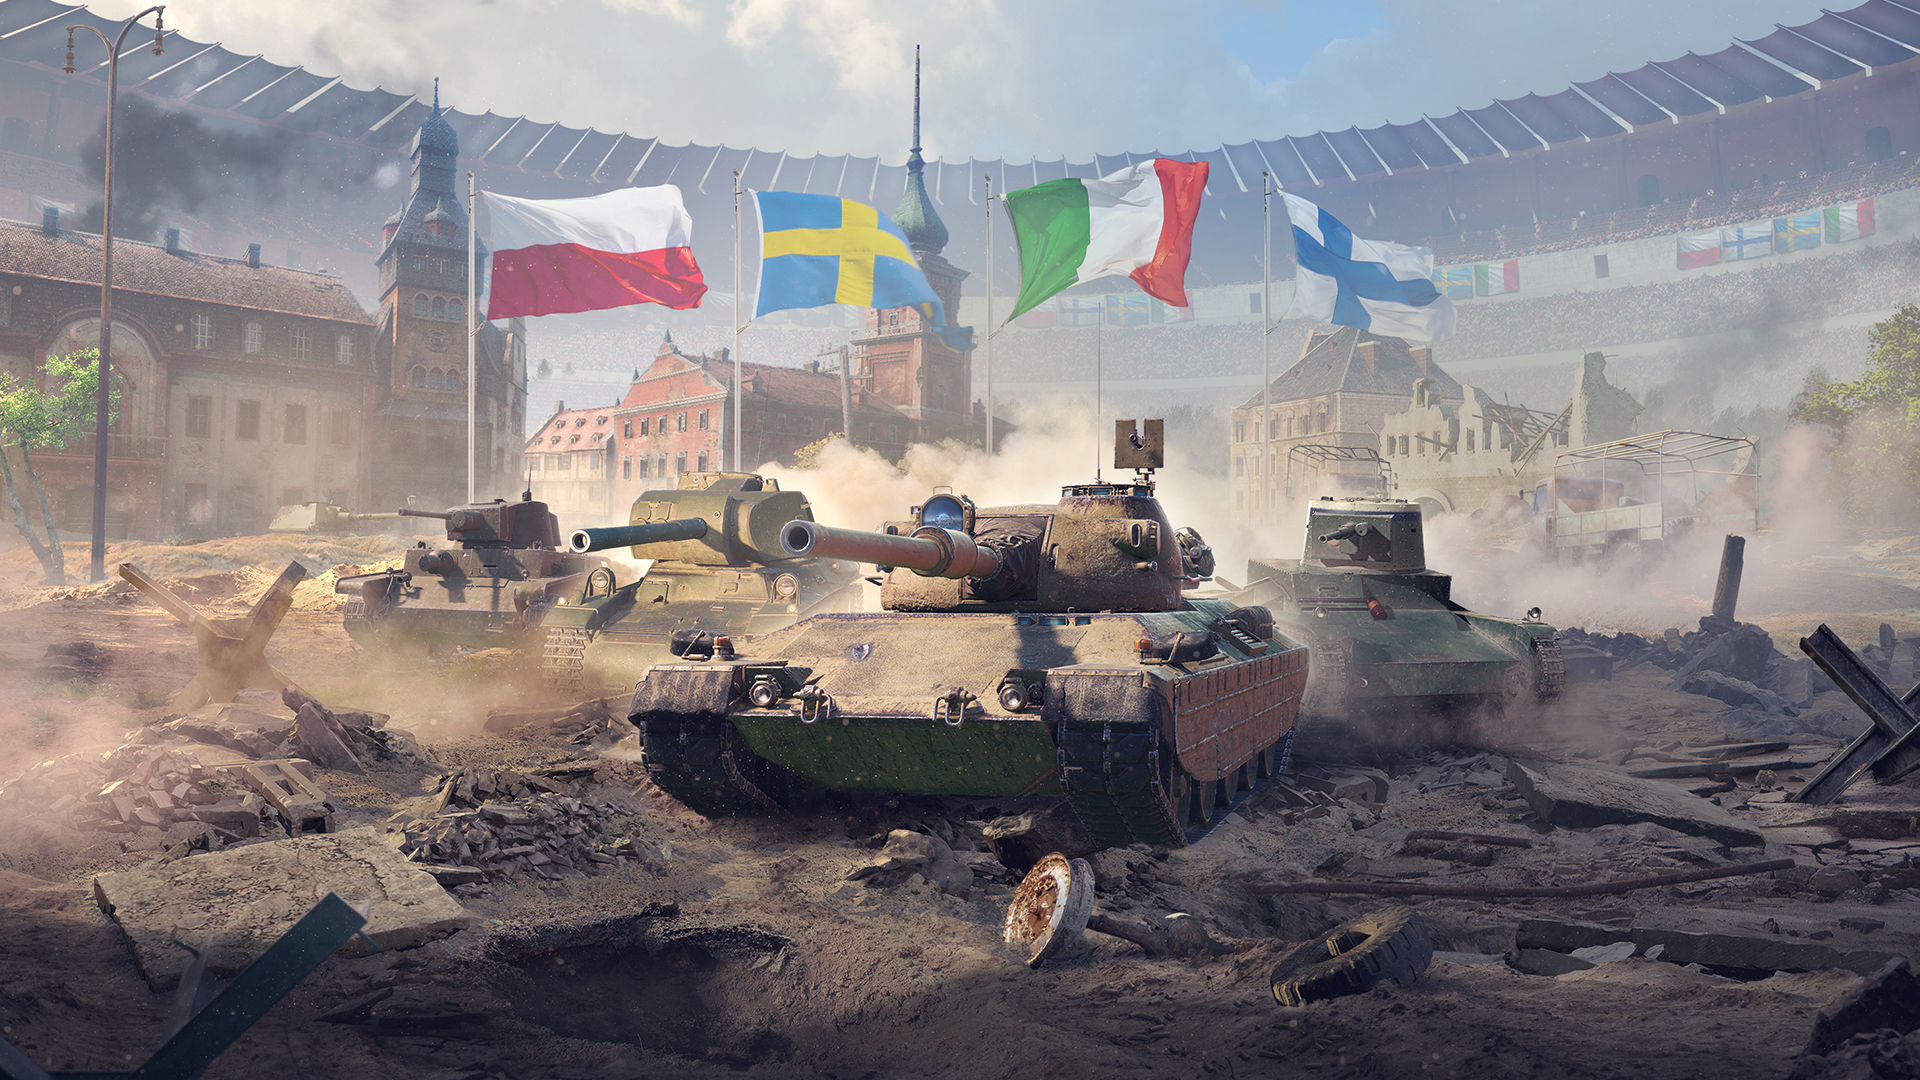 Евро wot. World of Tanks Blitz. Танки WOT Blitz. World of Tanks Blitz 2019. Tanks Blitz сборная Европы.